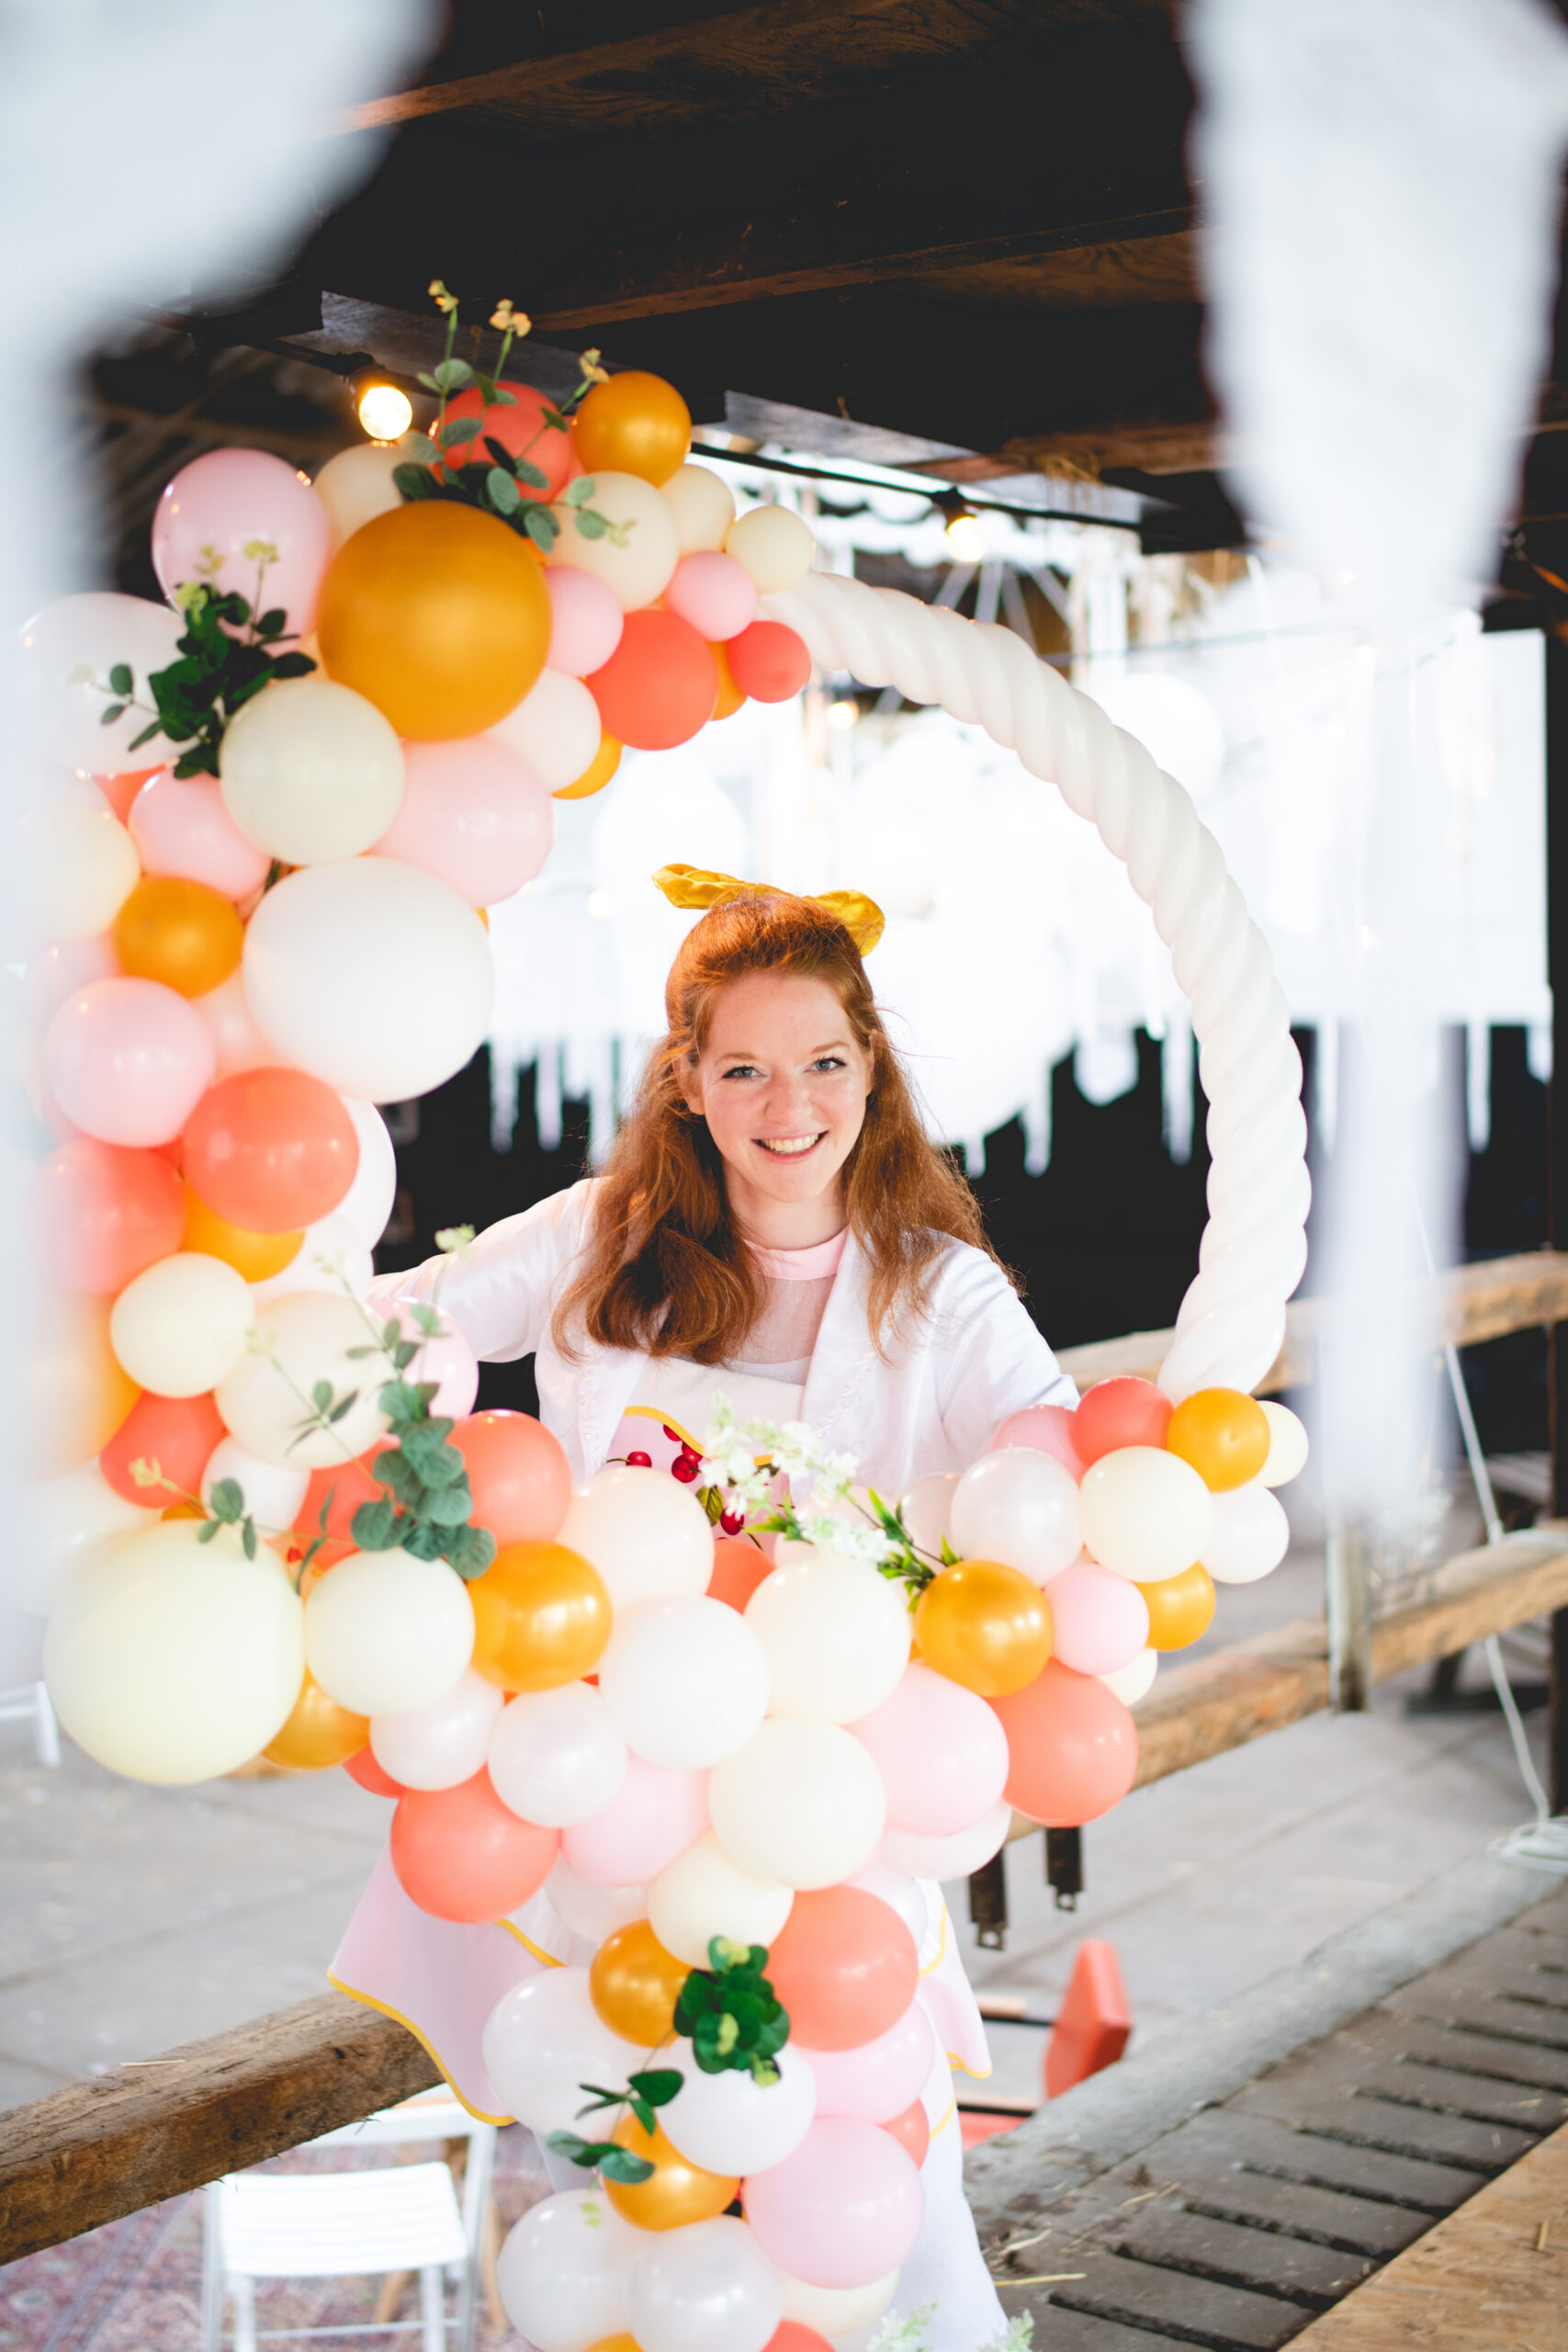 Bruiloft of trouwerij met ballonnen